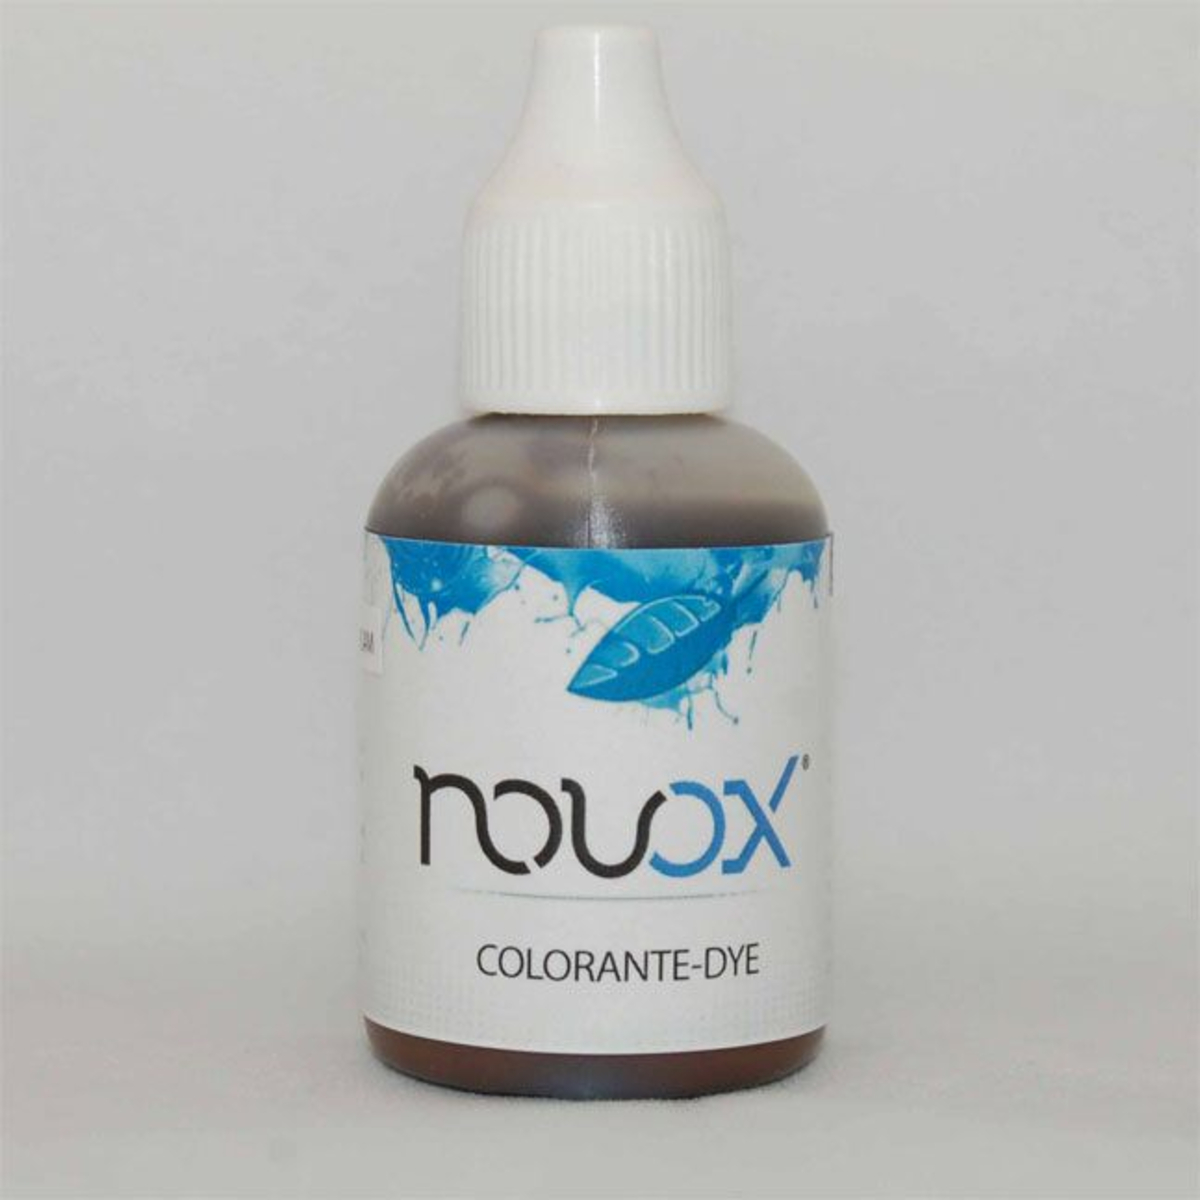 Colorante marron para Novox (30ml)